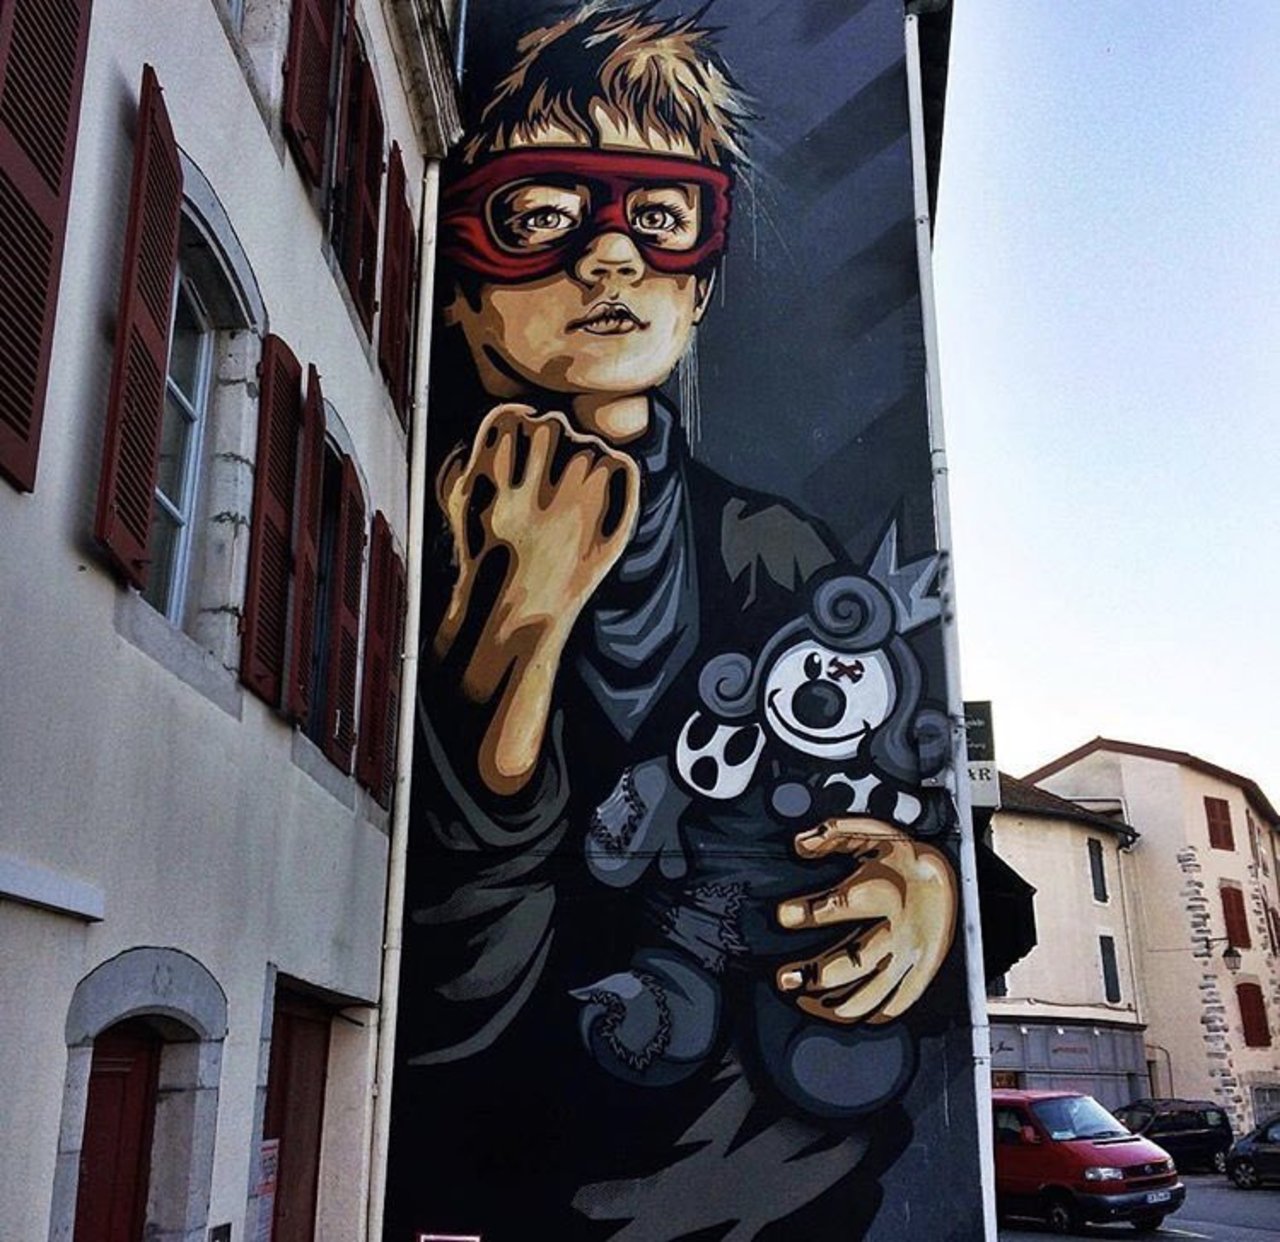 New mural by RNST #StreetArt #mural #graffiti #art https://t.co/Q8sht6TBpr